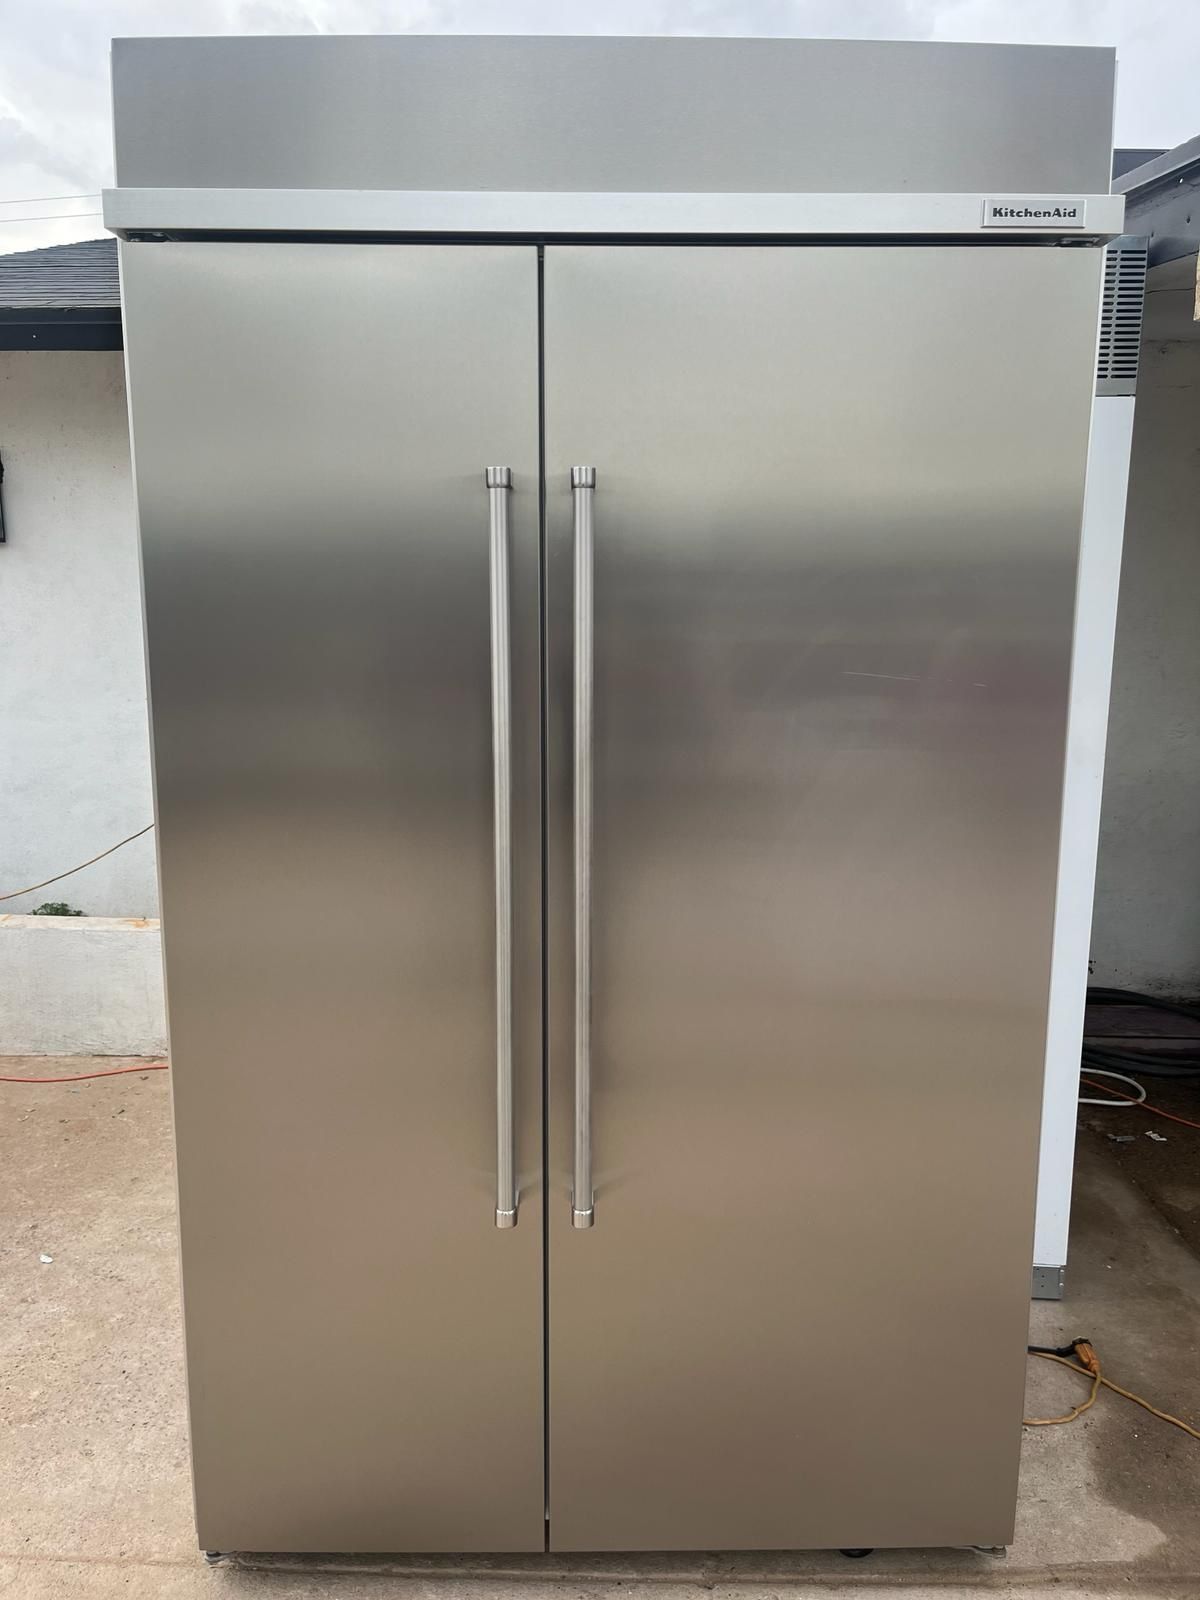 48 Inch Built-In Kitchenaid Refrigerator